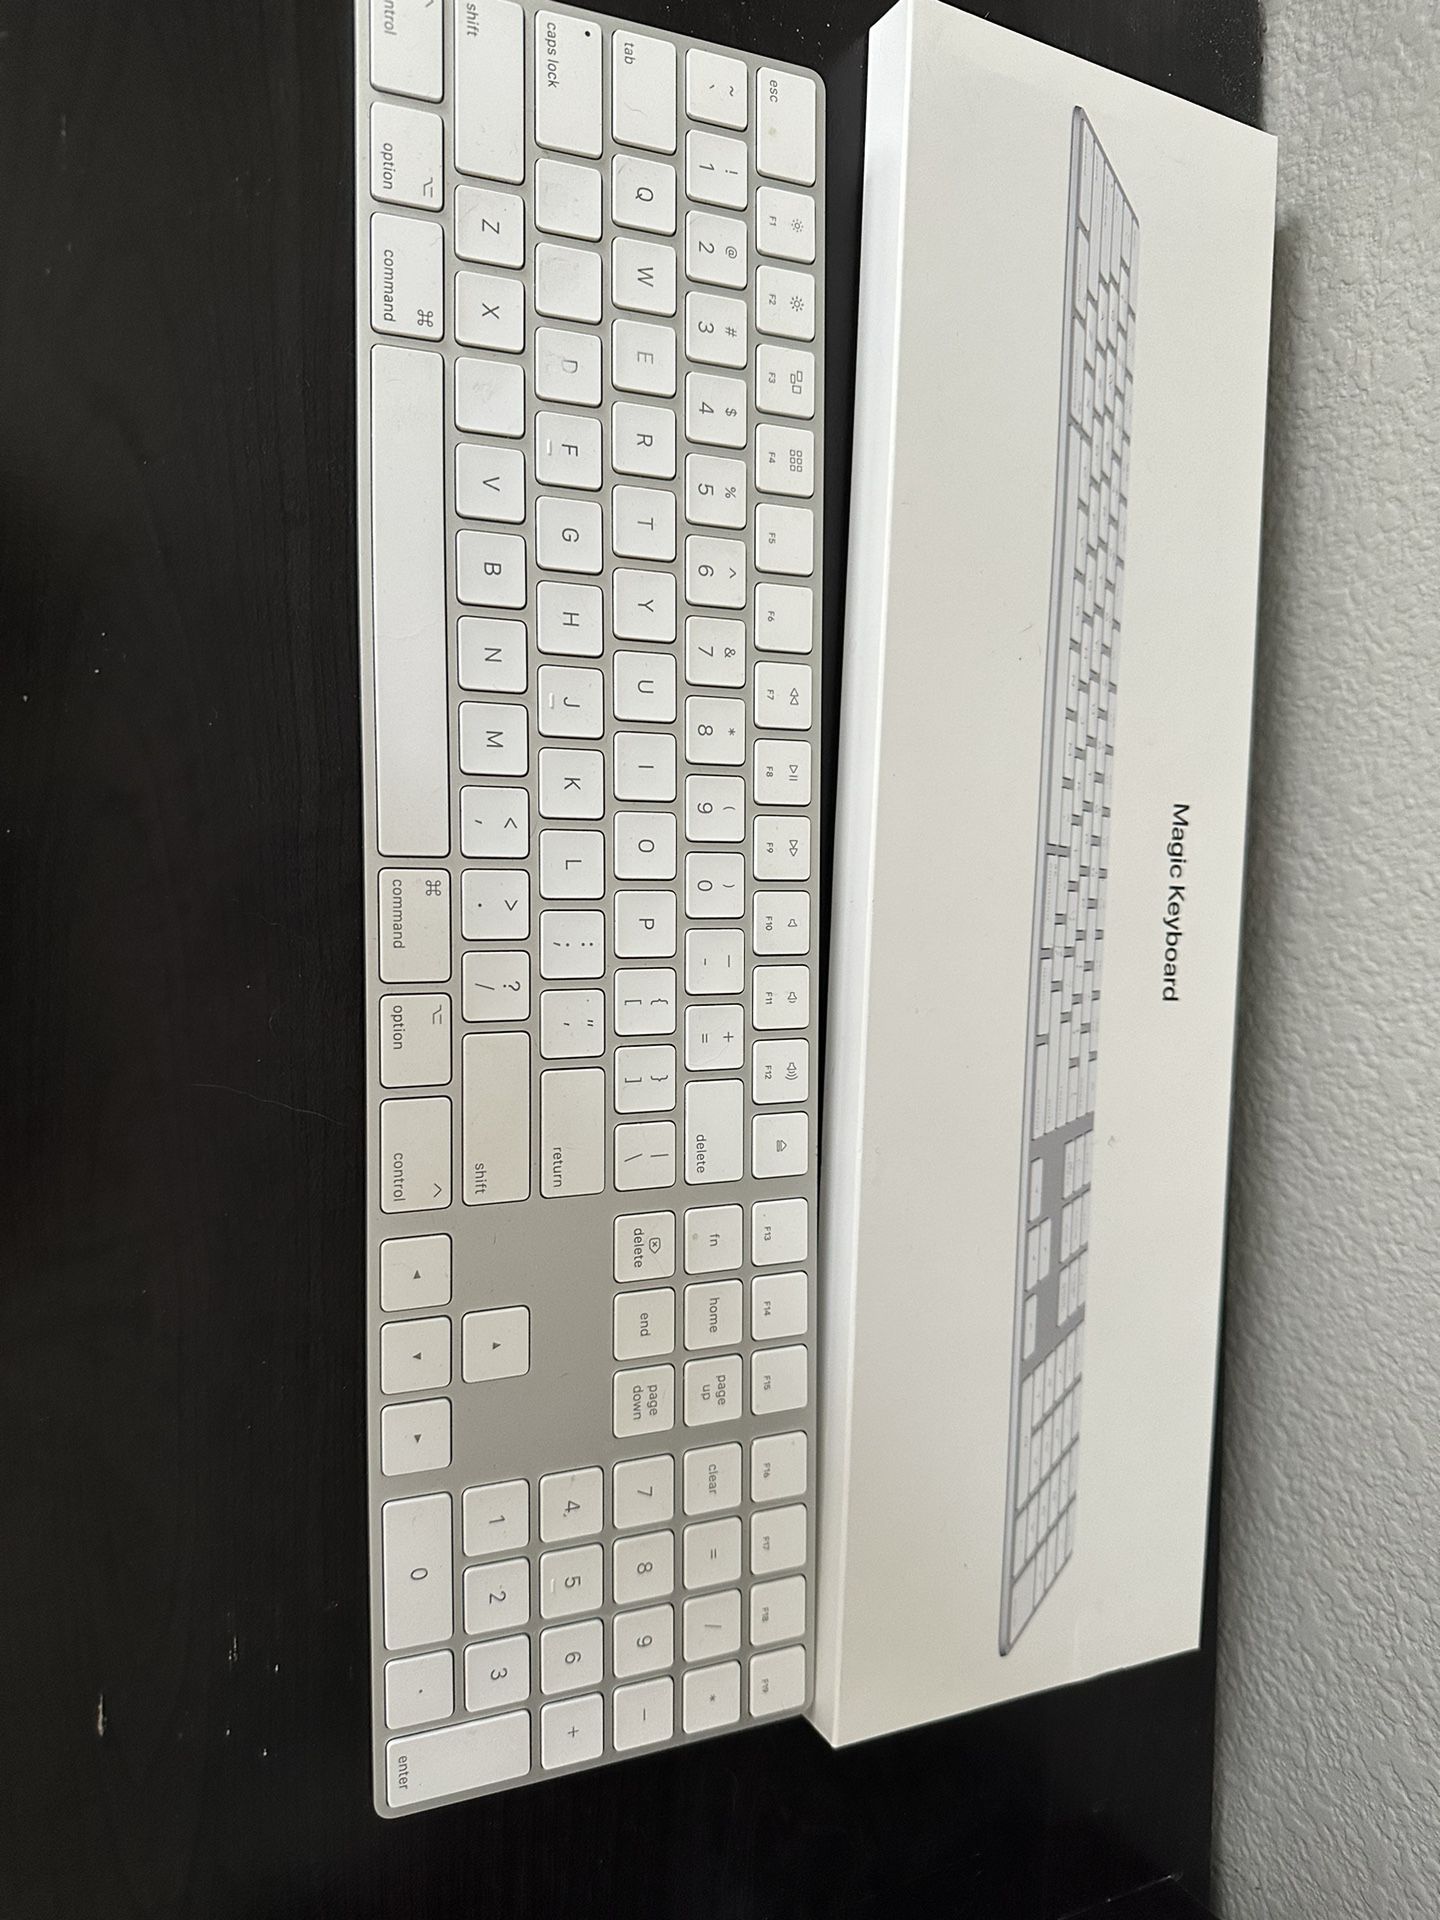 Apple Magic Keyboard (used)